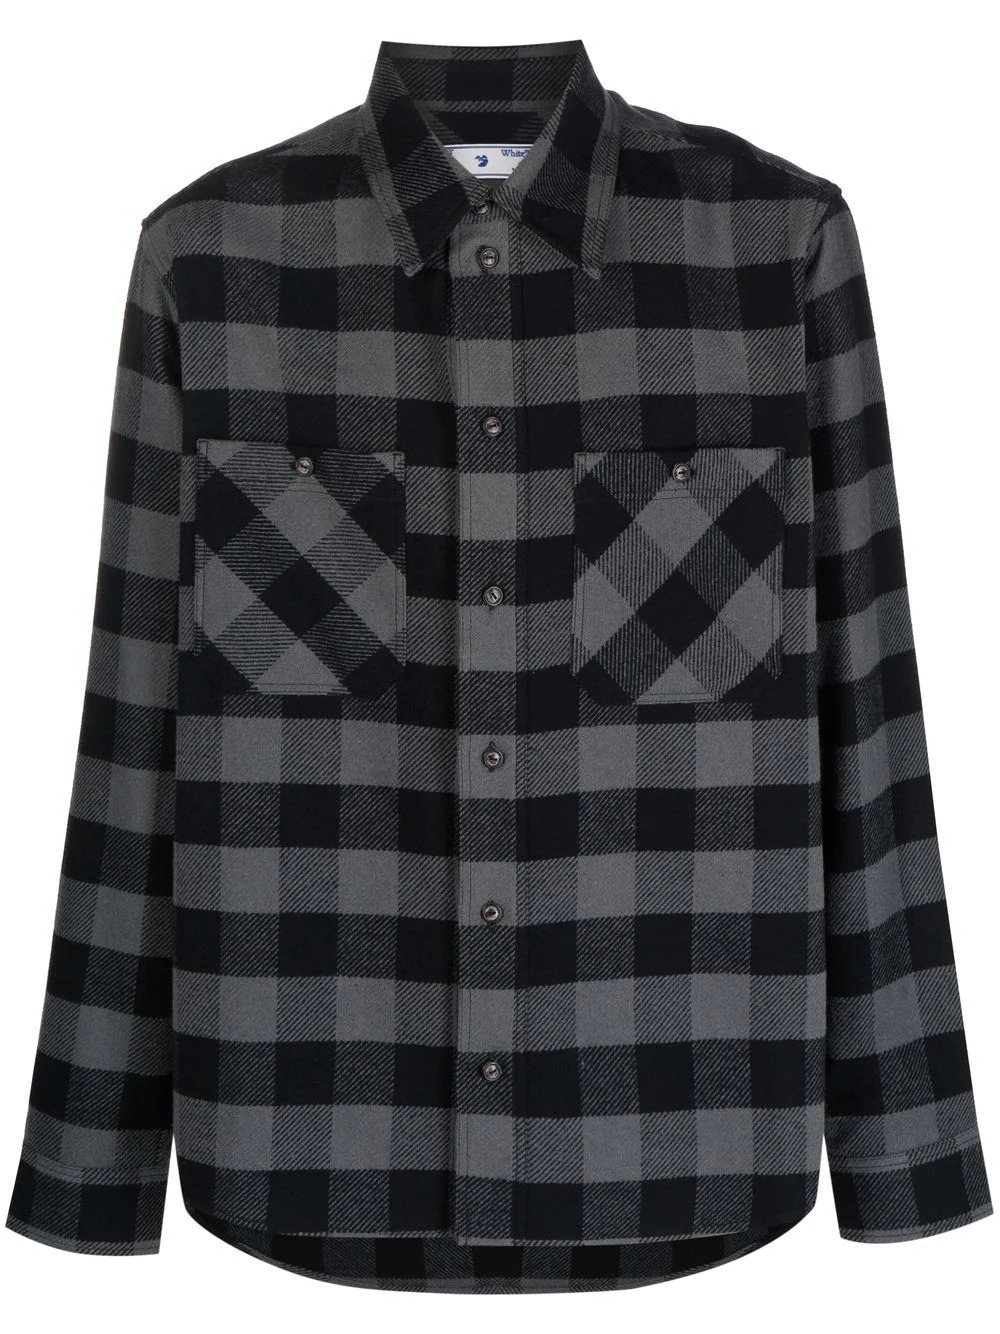 Plaid flannel shirt in grey